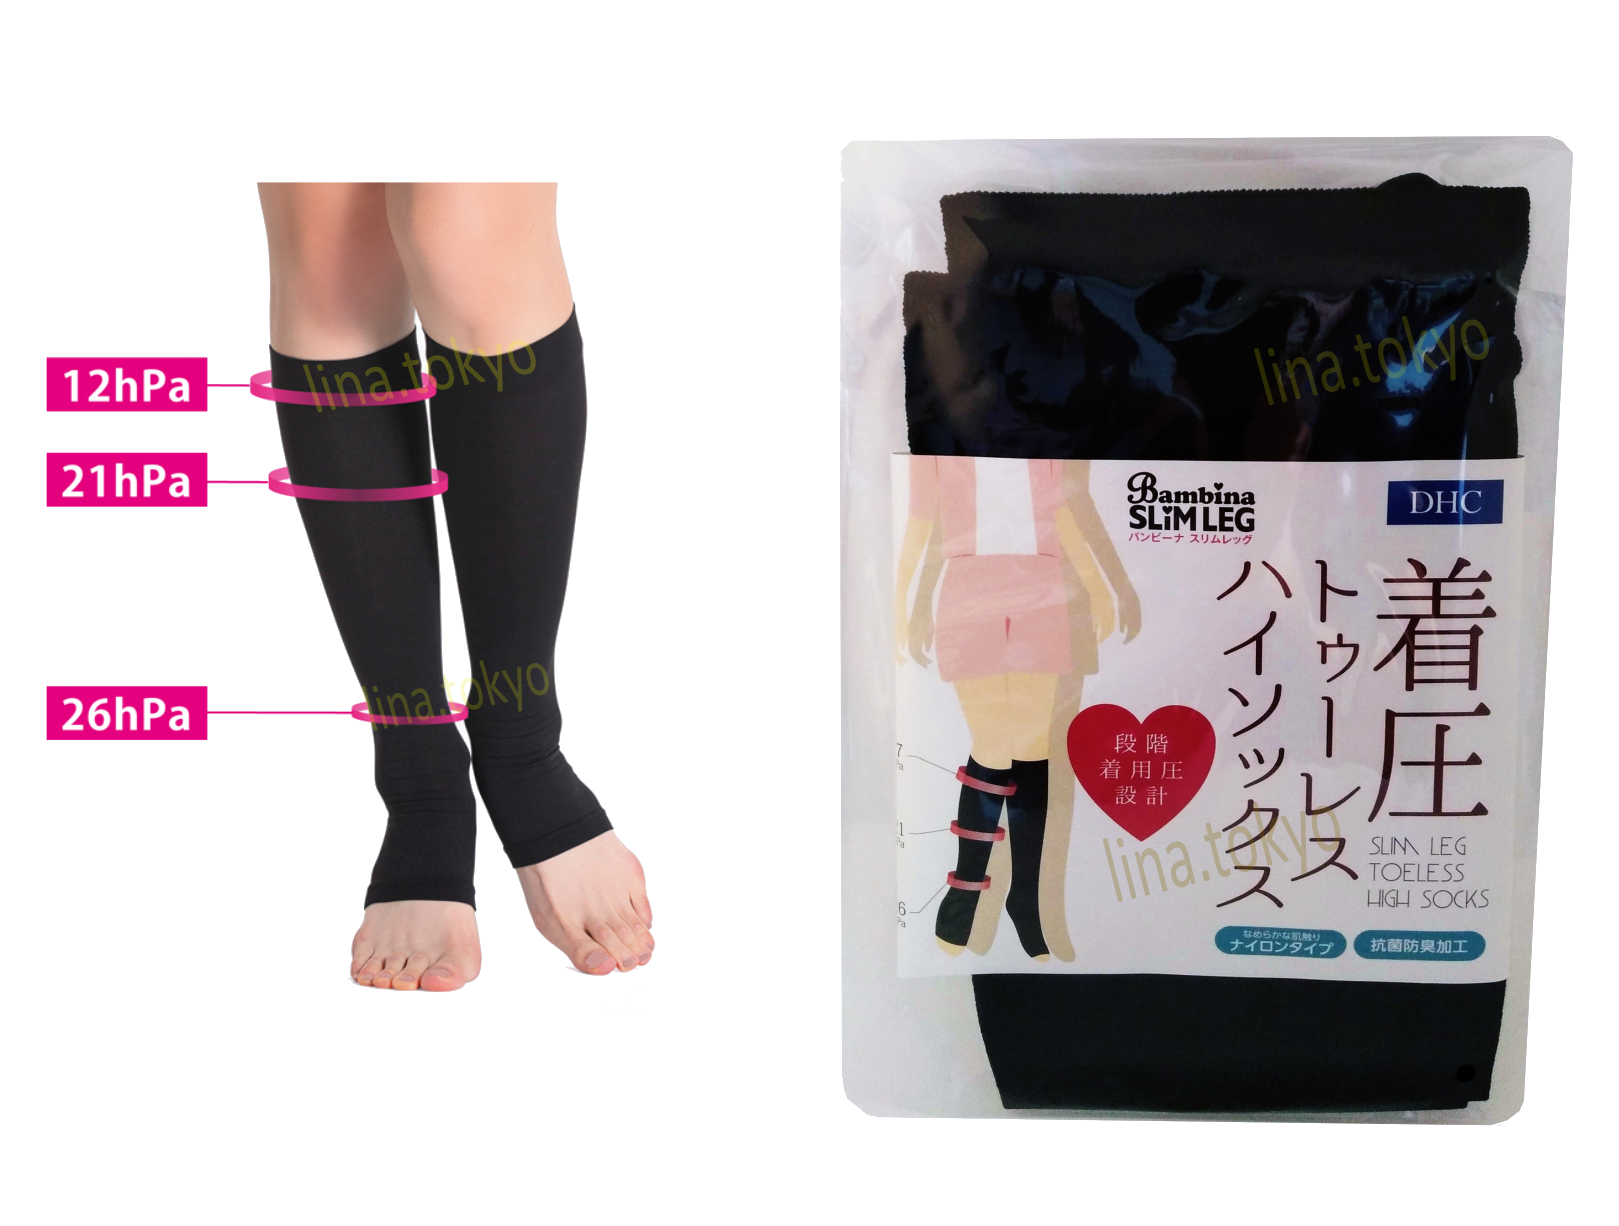 Vớ áp lực y khoa nhật bản DHC Bambina Slim Leg High Socks điều trị, ngăn ngừa suy giãn tĩnh mạch, sưng phù chân hở ngón chân (D1455) (Miễn phí giao hàng)